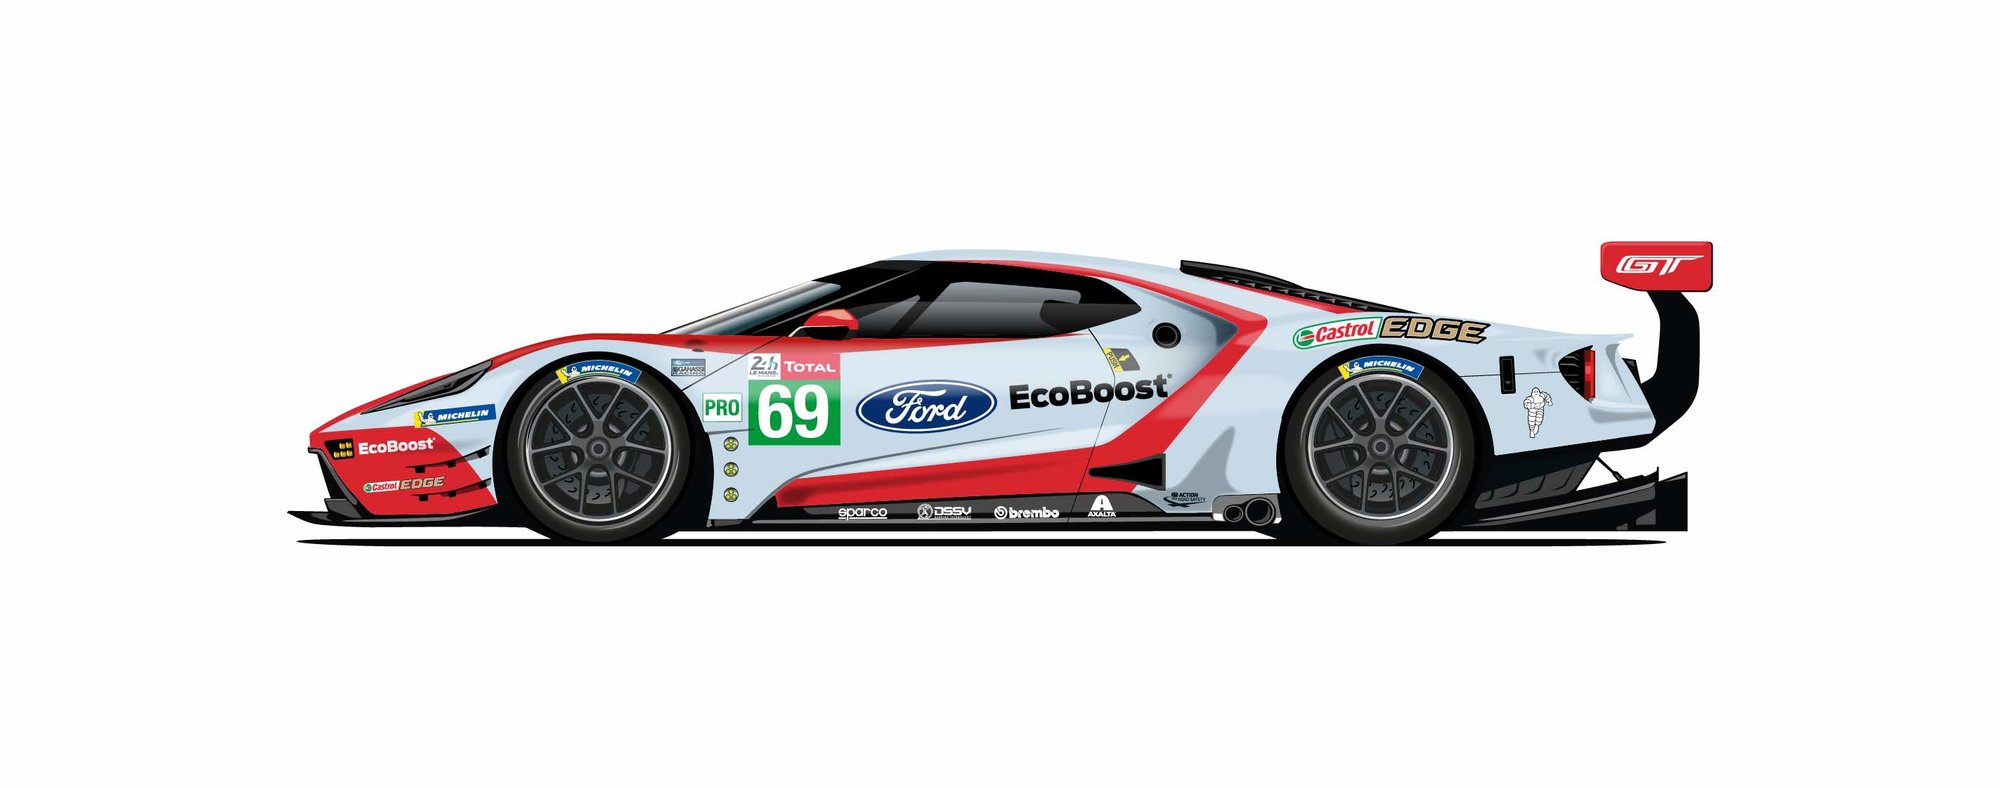 Speciální barevné provedení závodních vozů týmu Ford Chip Ganassi Racing oslavuje minulé i současné úspěchy značky v Le Mans